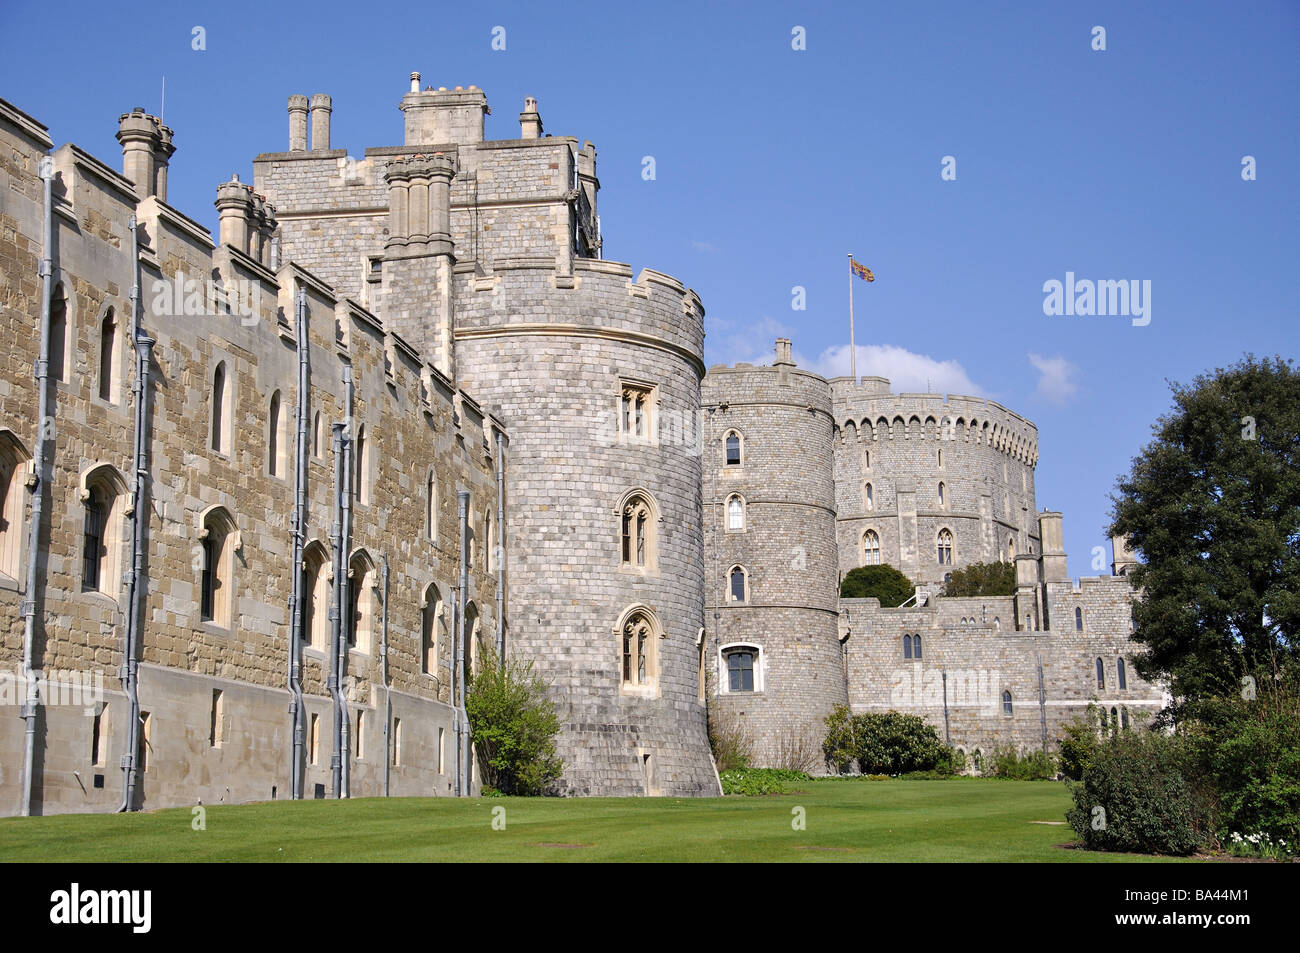 La torre rotonda e delle mura del castello, il Castello di Windsor, Windsor, Berkshire, Inghilterra, Regno Unito Foto Stock